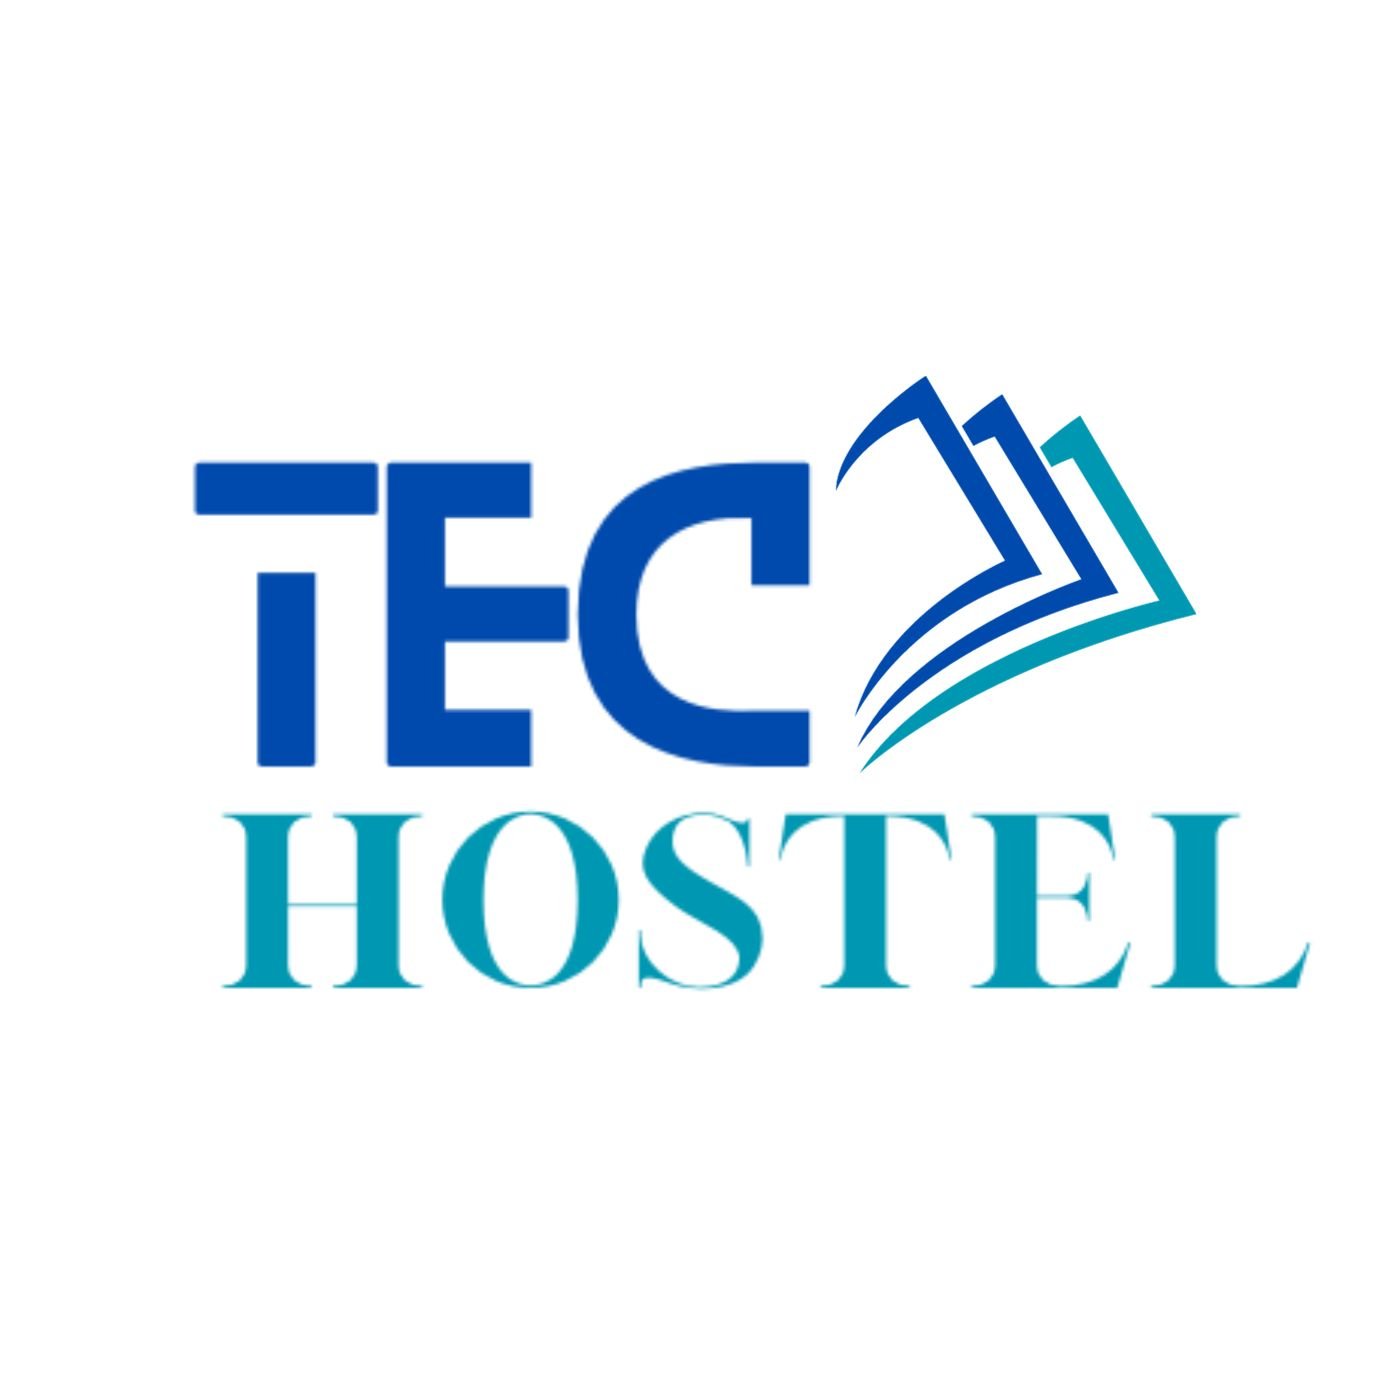 TecHostel logo